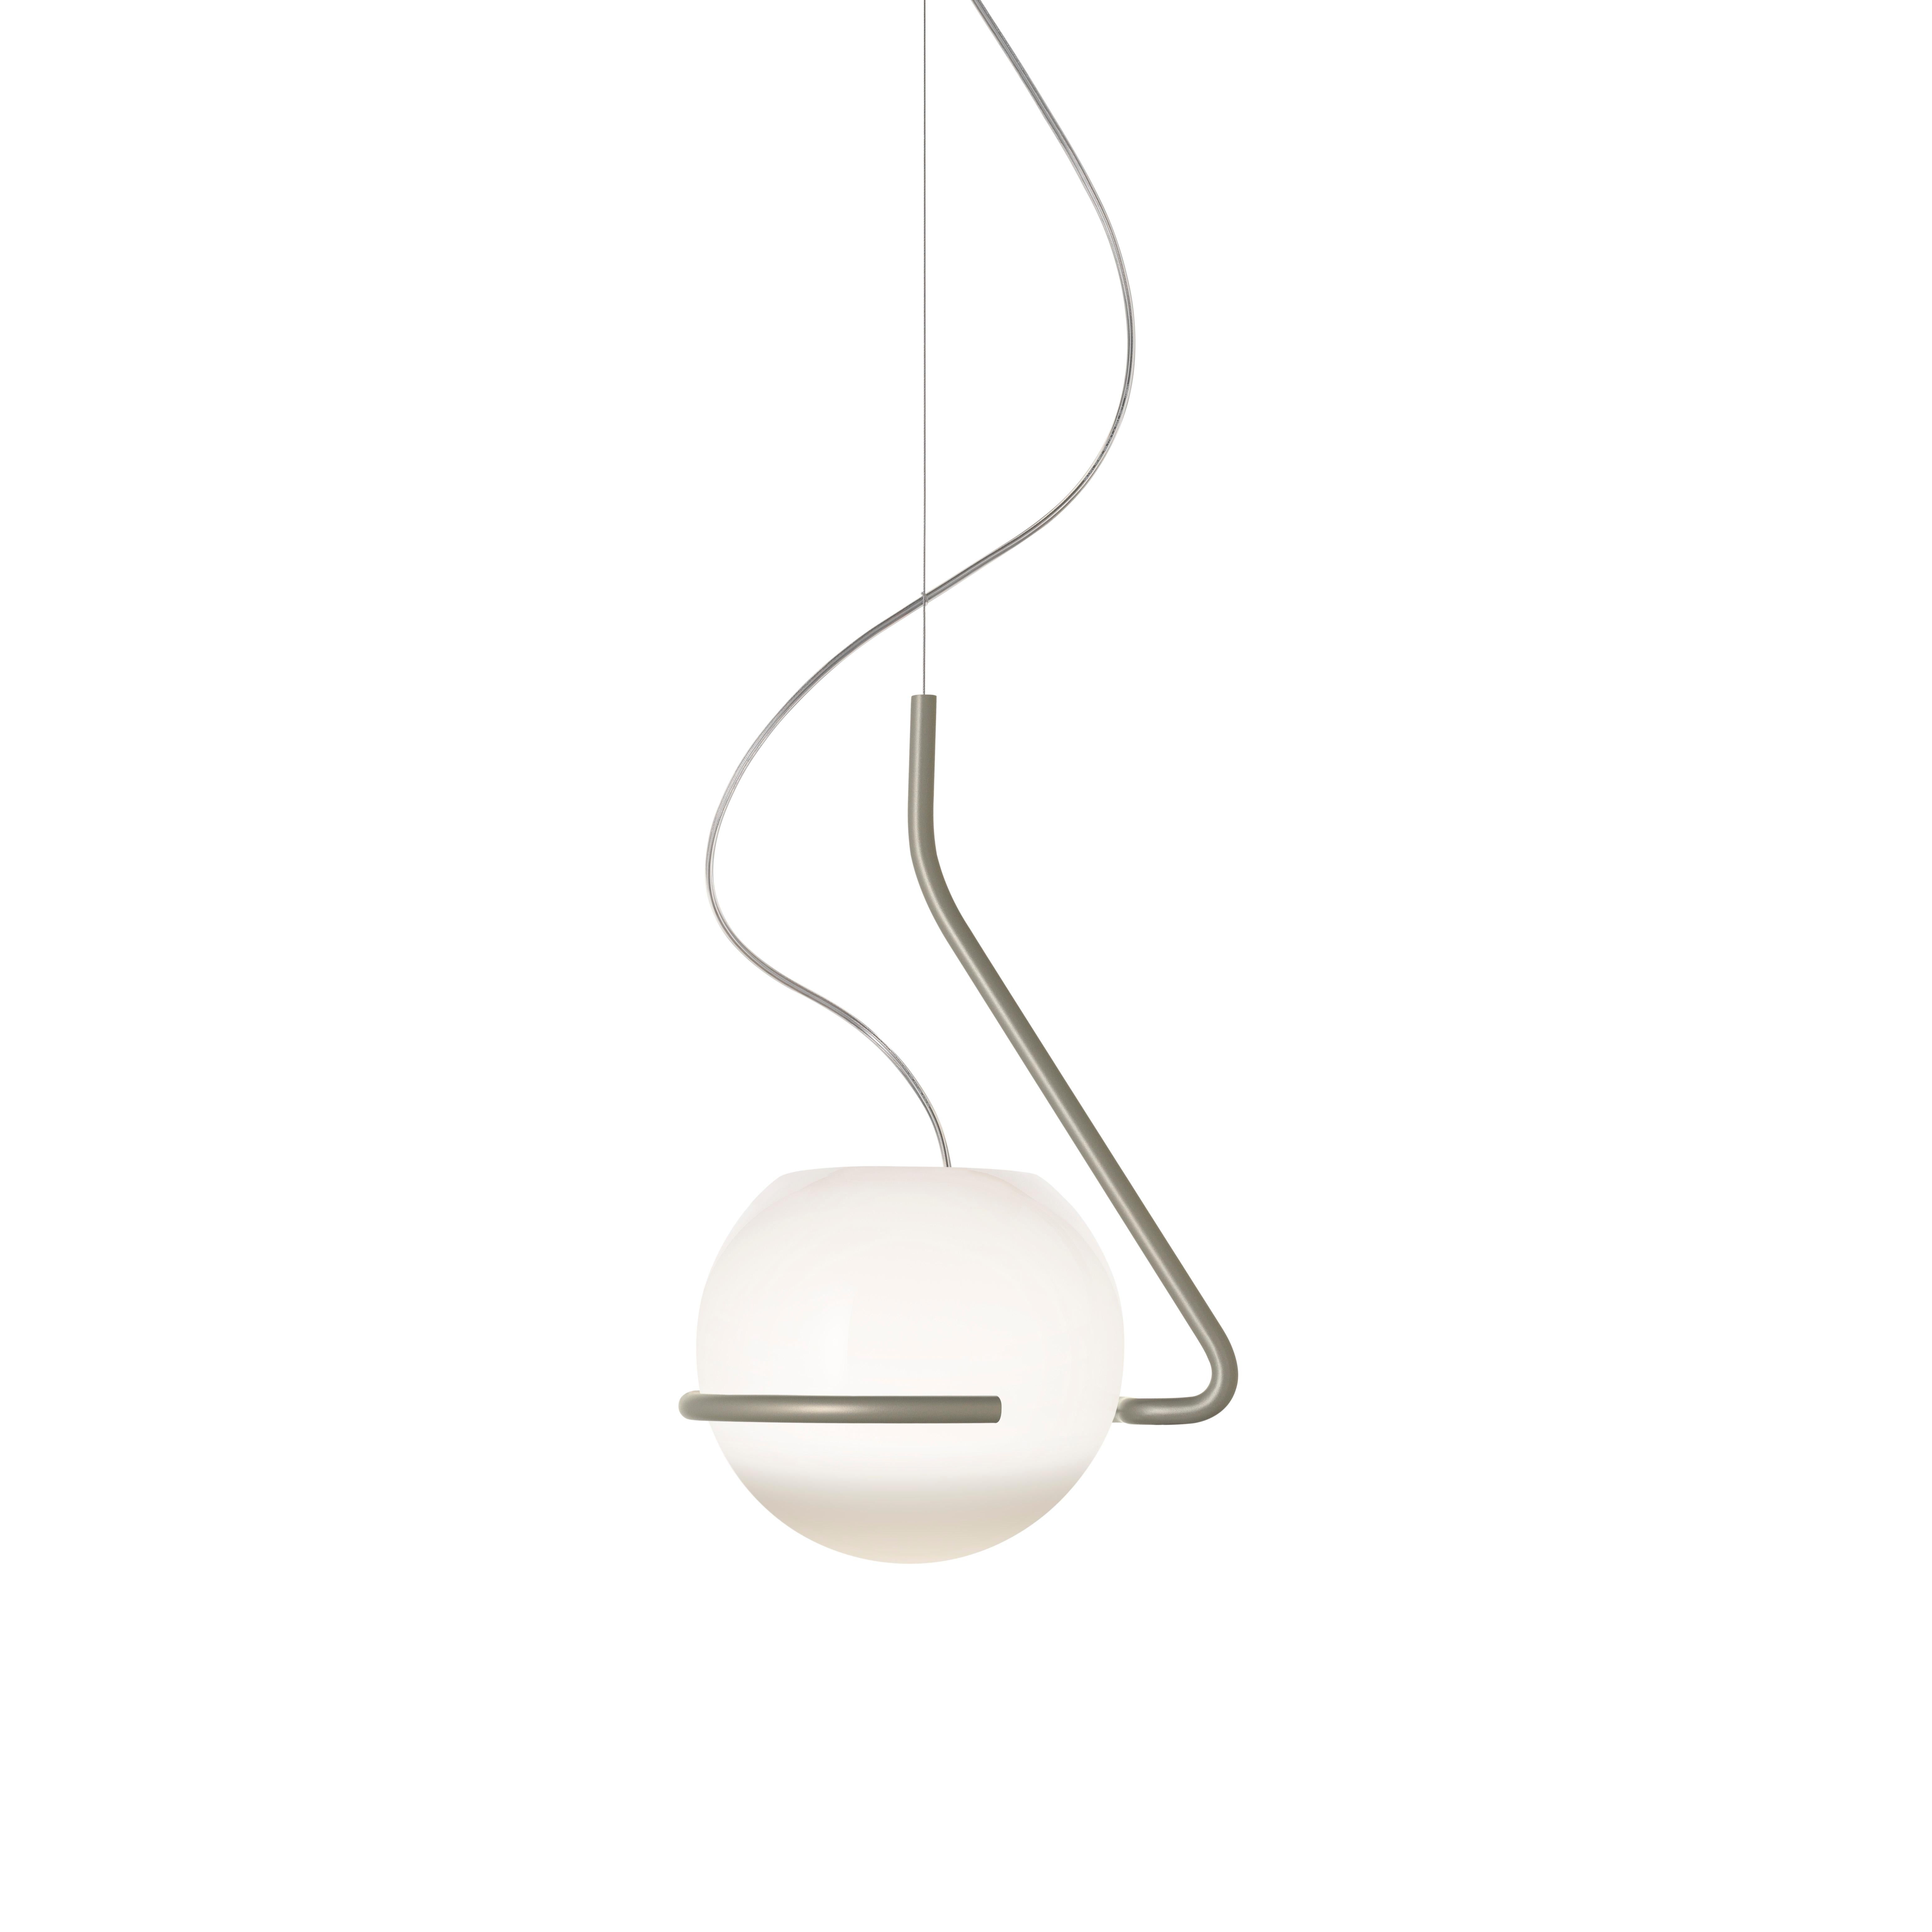 Foscarini Tonda Small Wall Lamp by Ferruccio Laviani For Sale 2